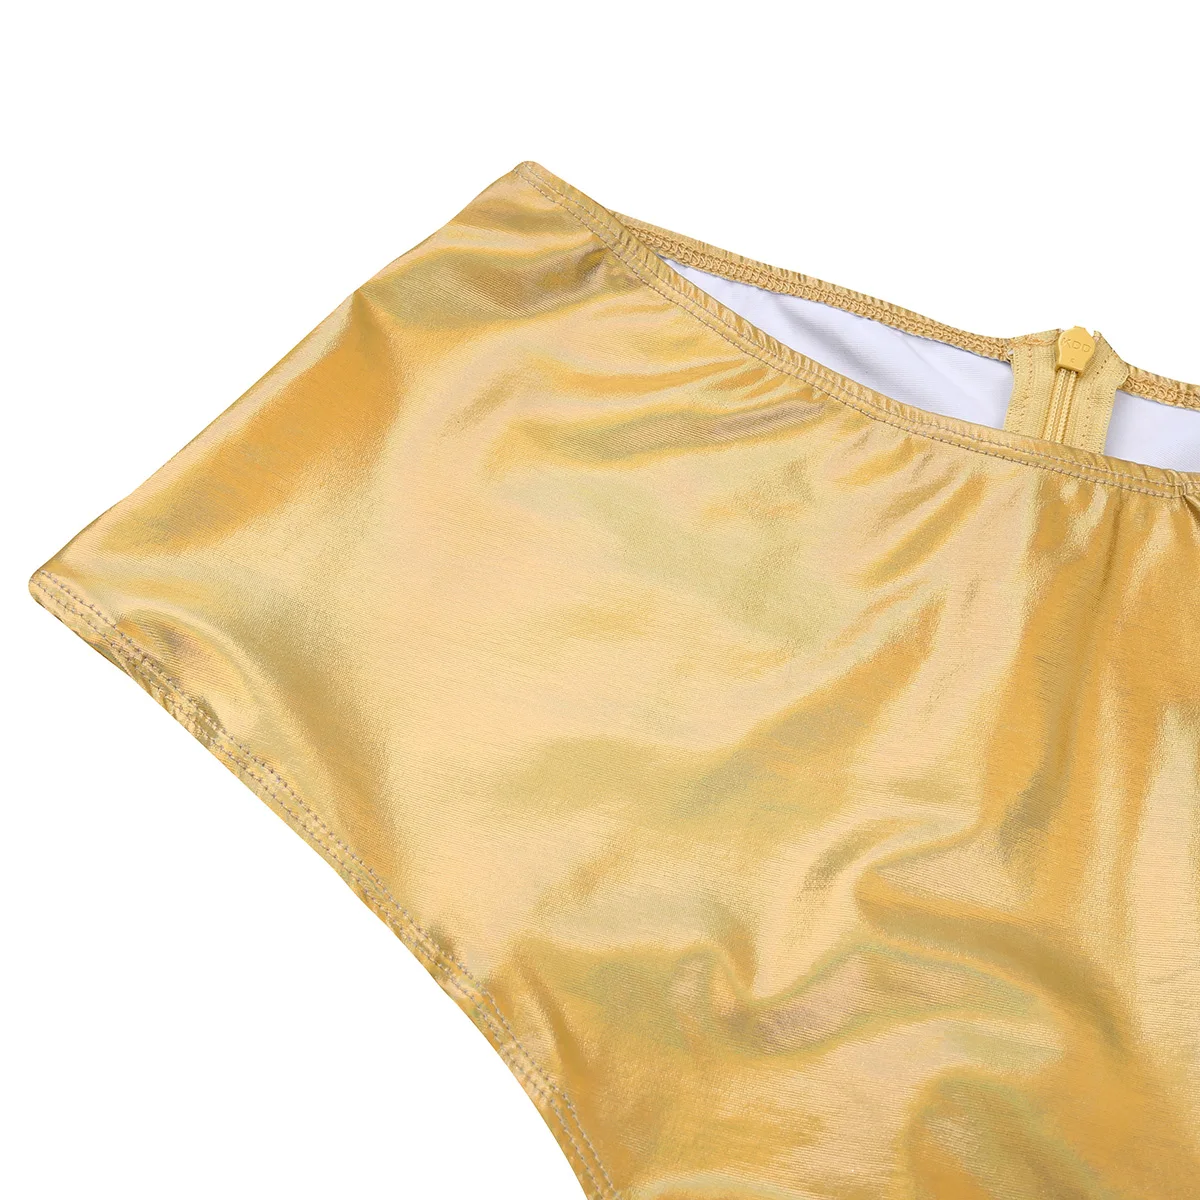 Iiniim женские блестящие трусики с металлической молнией сзади, шорты с высокой талией, сексуальное Клубное белье, Femme Pole танцевальное белье